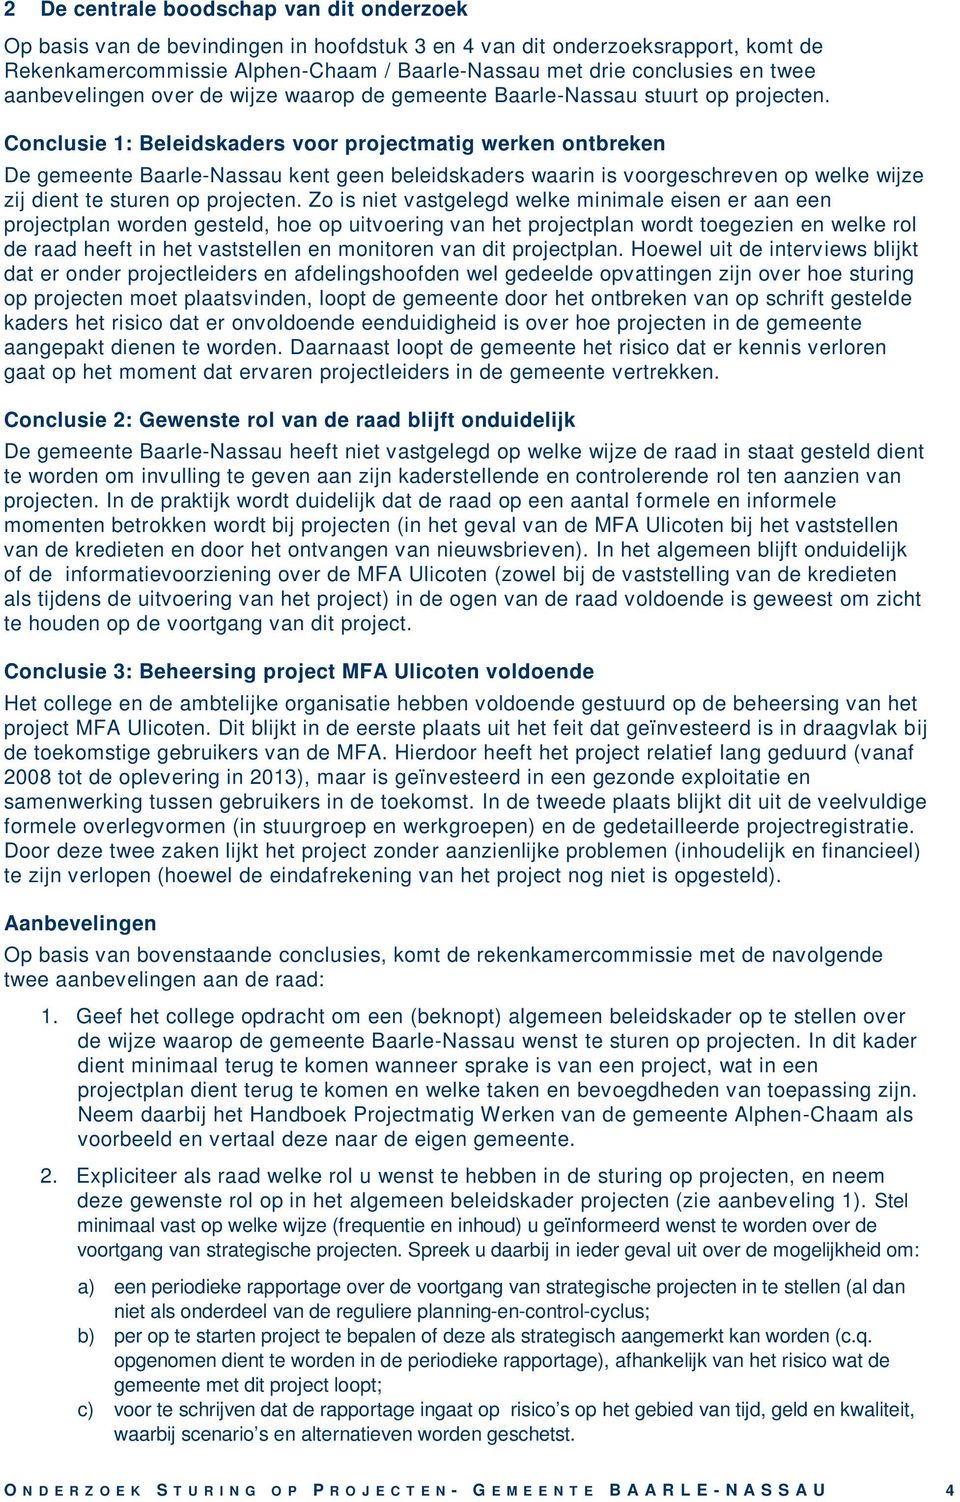 Conclusie 1: Beleidskaders voor projectmatig werken ontbreken De gemeente Baarle-Nassau kent geen beleidskaders waarin is voorgeschreven op welke wijze zij dient te sturen op projecten.